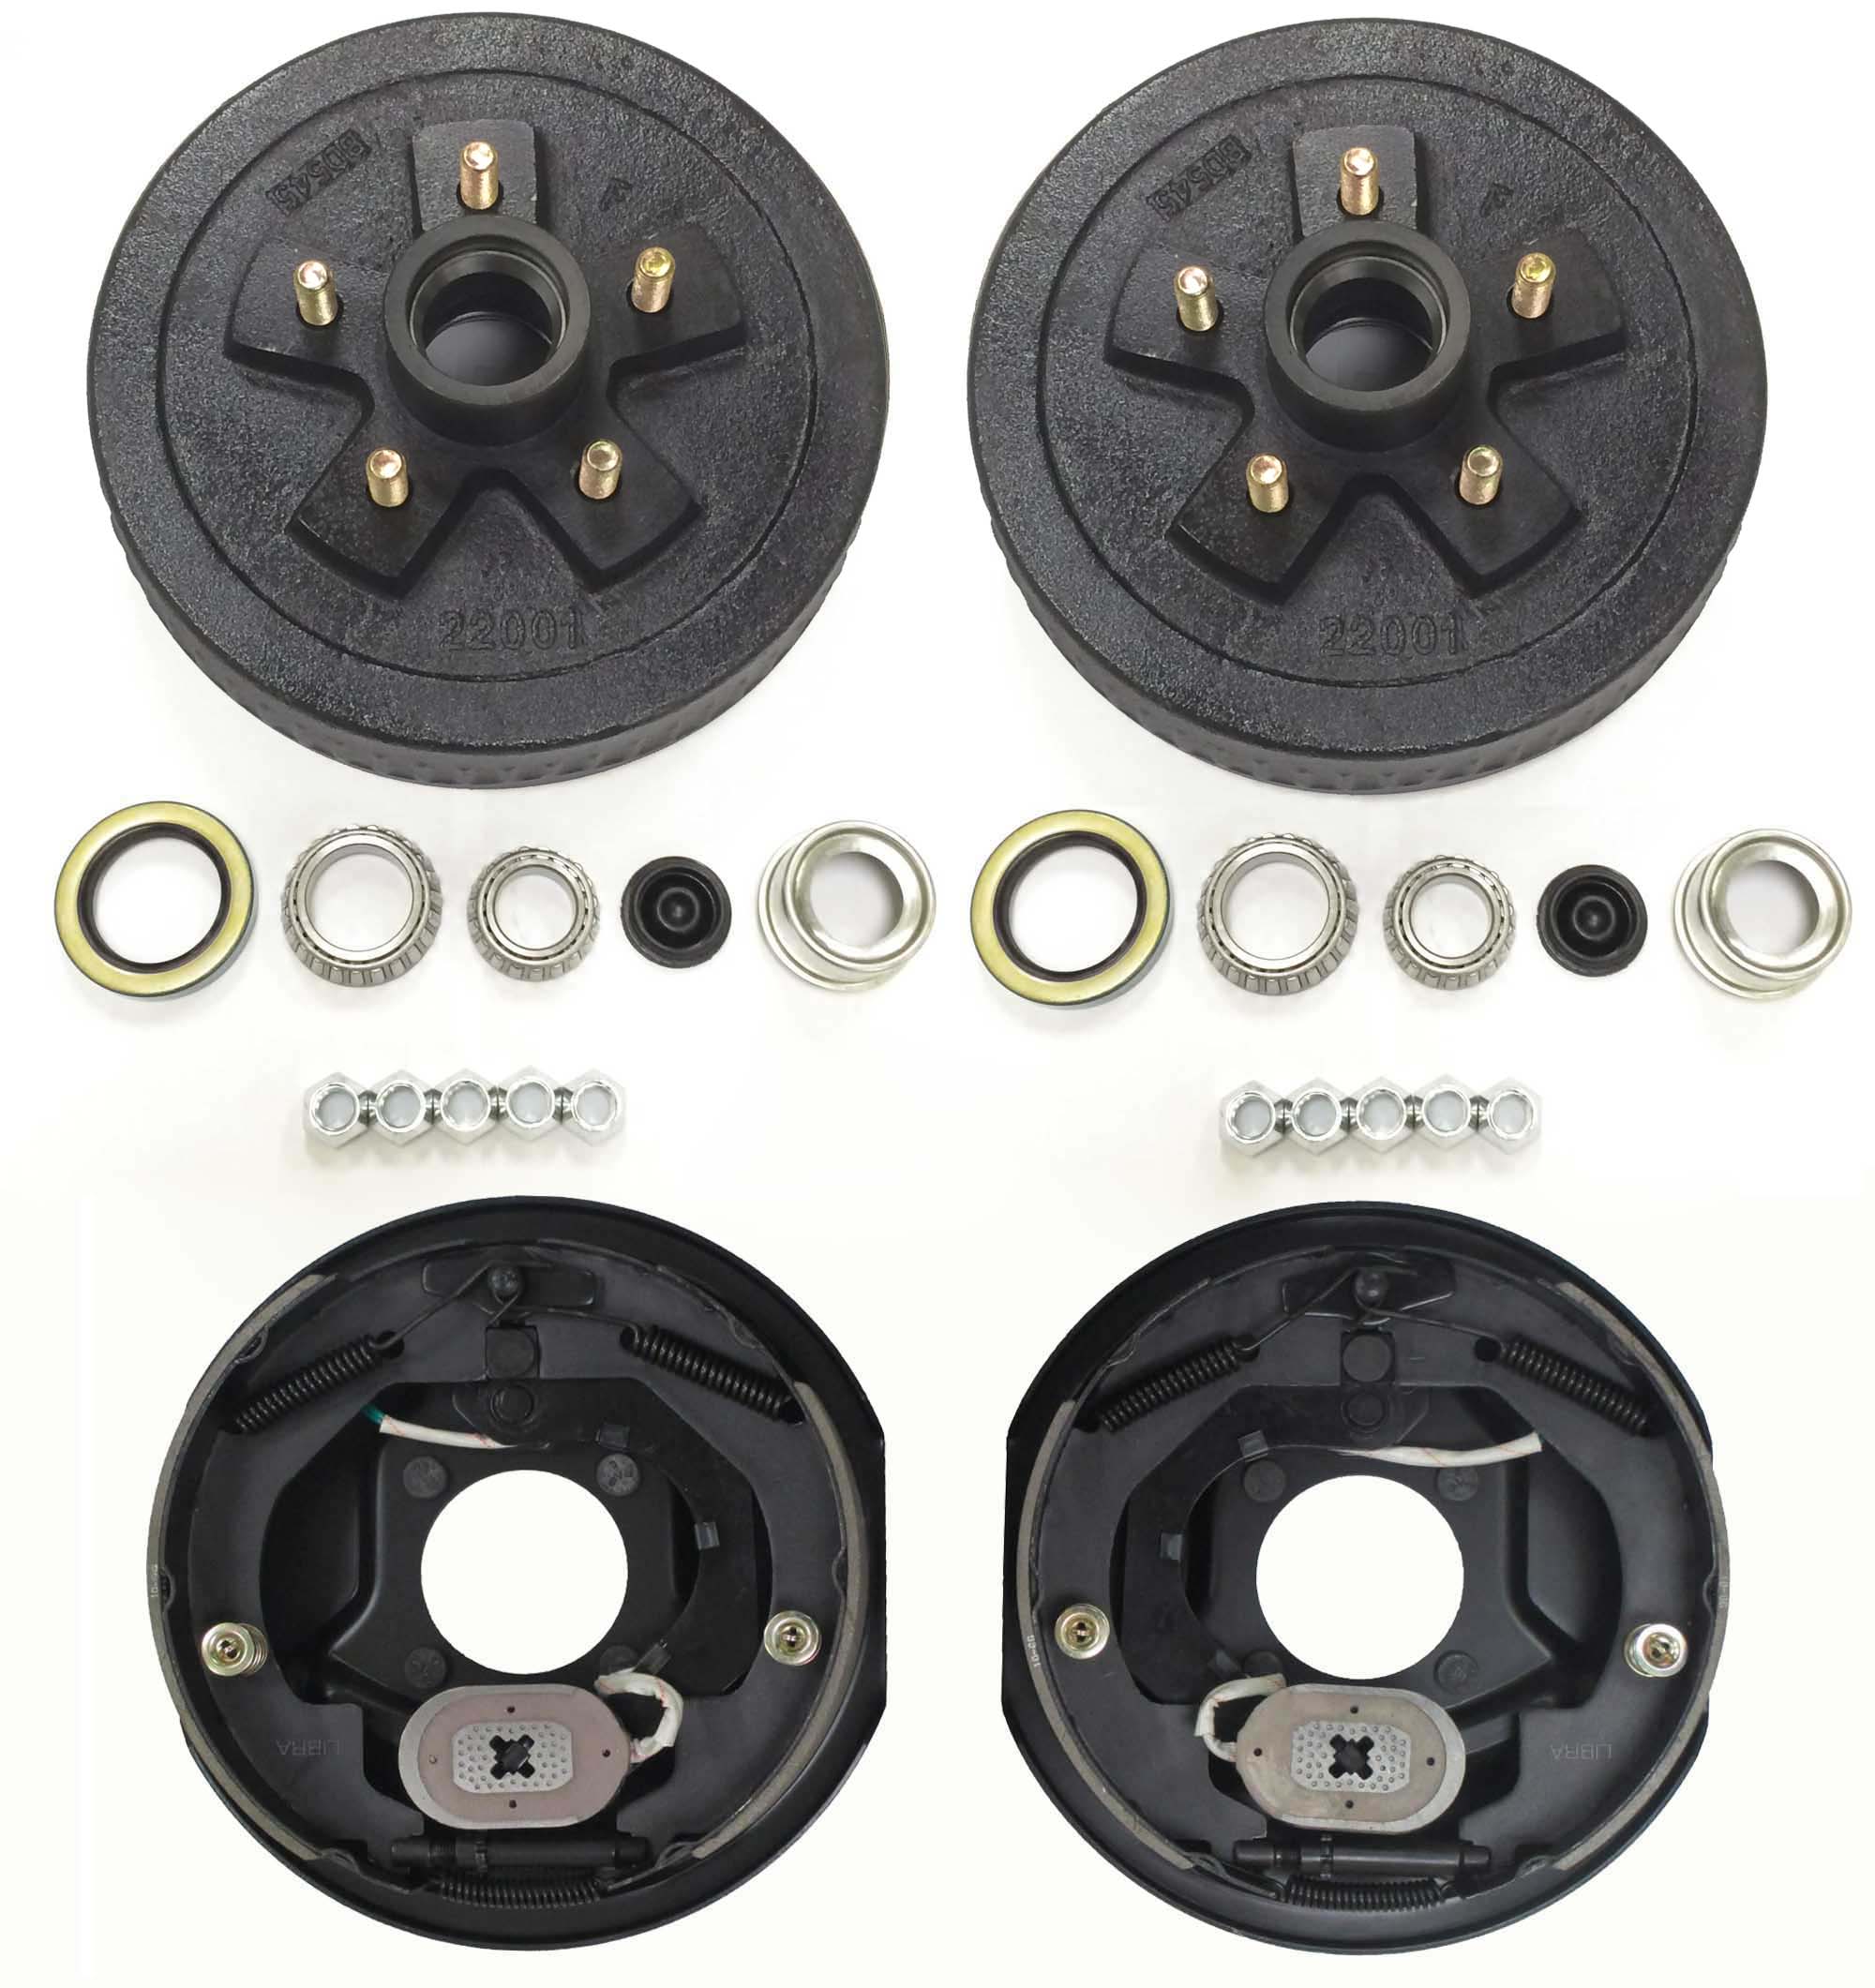 2-Pk 10 inch x 2 Trailer Brake Hub Drum Kit w/Bearings Seal Cap Lugs 5 on 4.75 